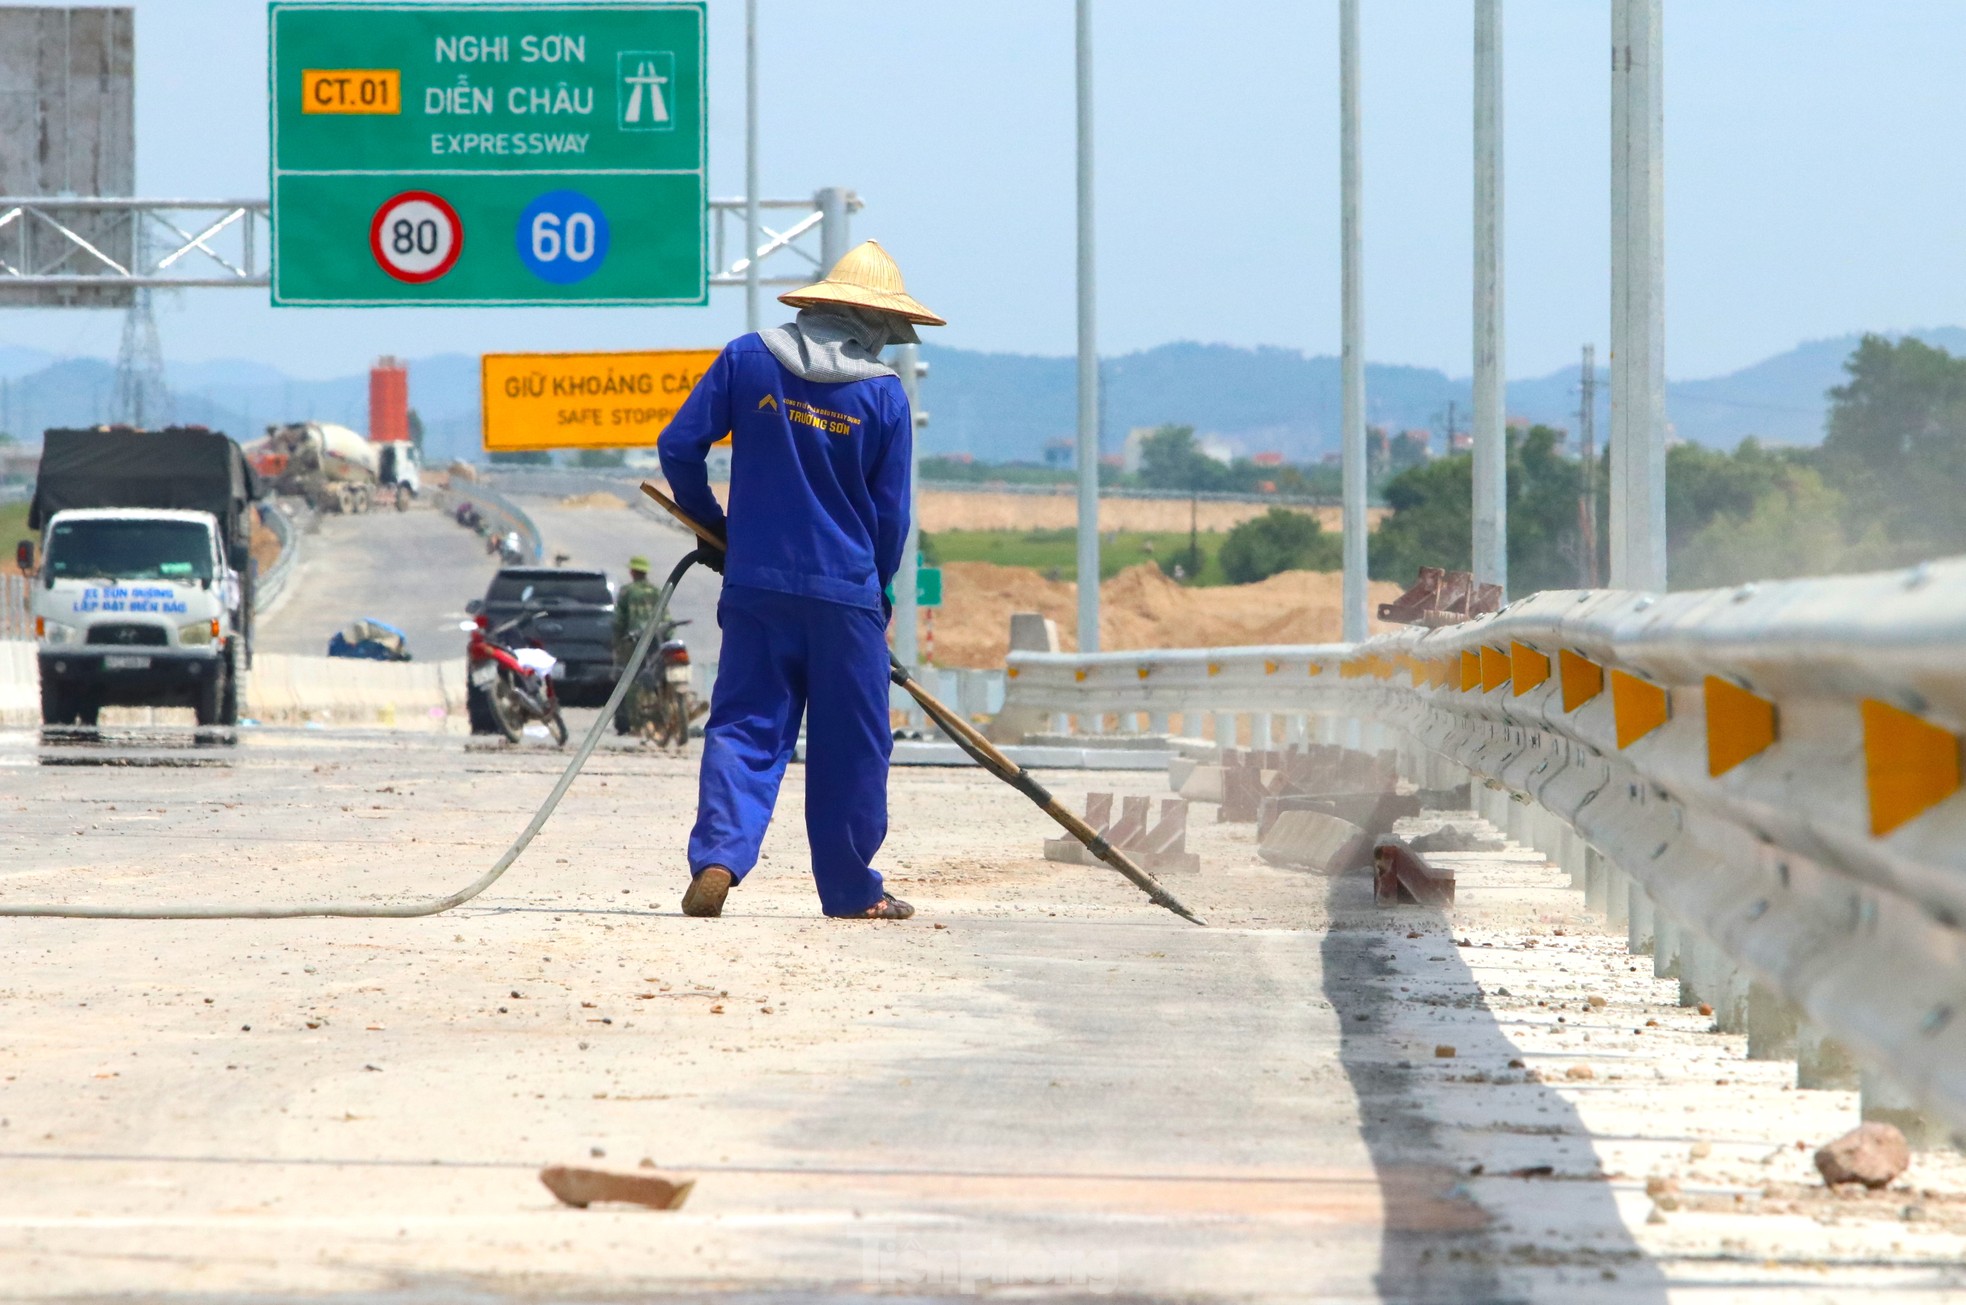 Cận cảnh cao tốc Bắc Nam đoạn Nghi Sơn - Diễn Châu trước ngày thông xe - Ảnh 4.